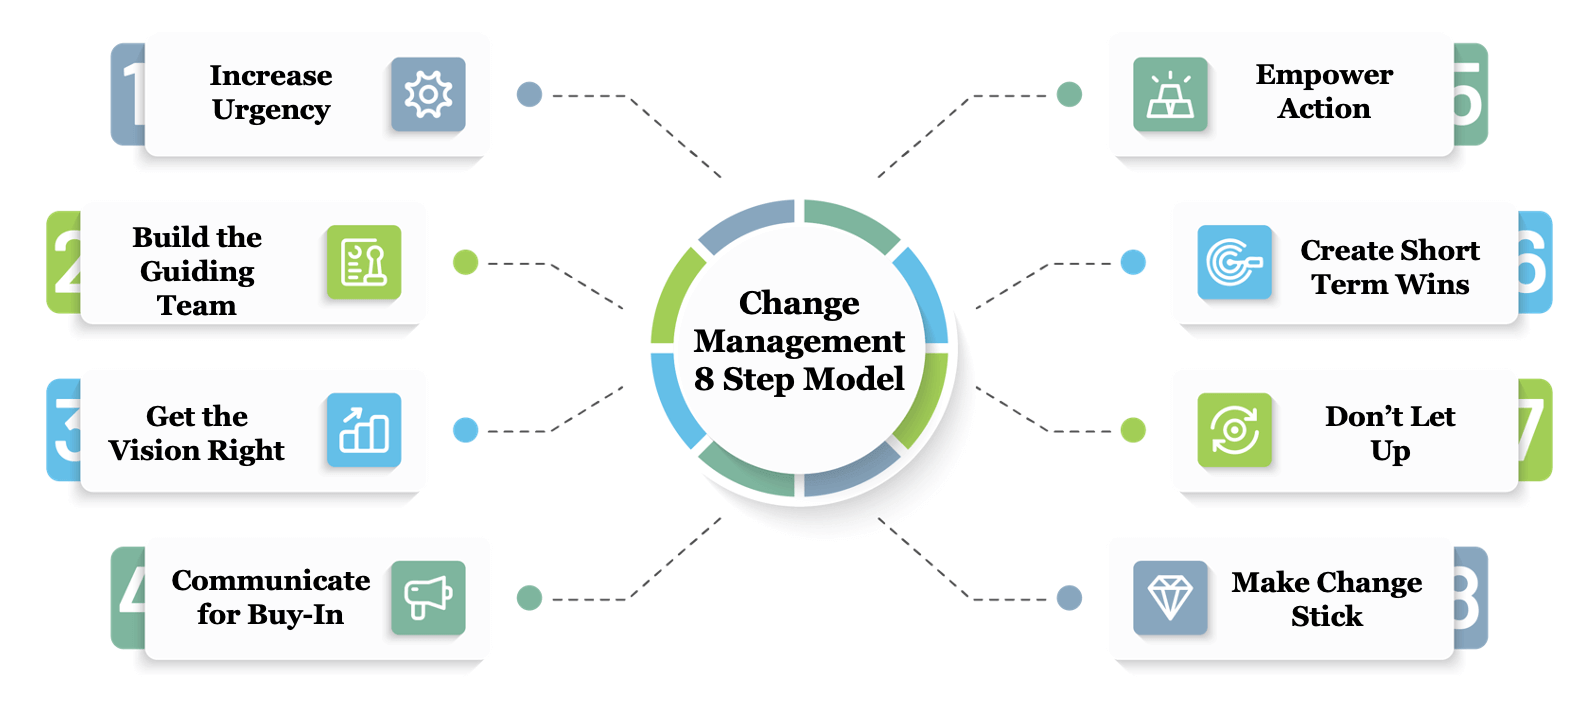 change-management-8-step-model